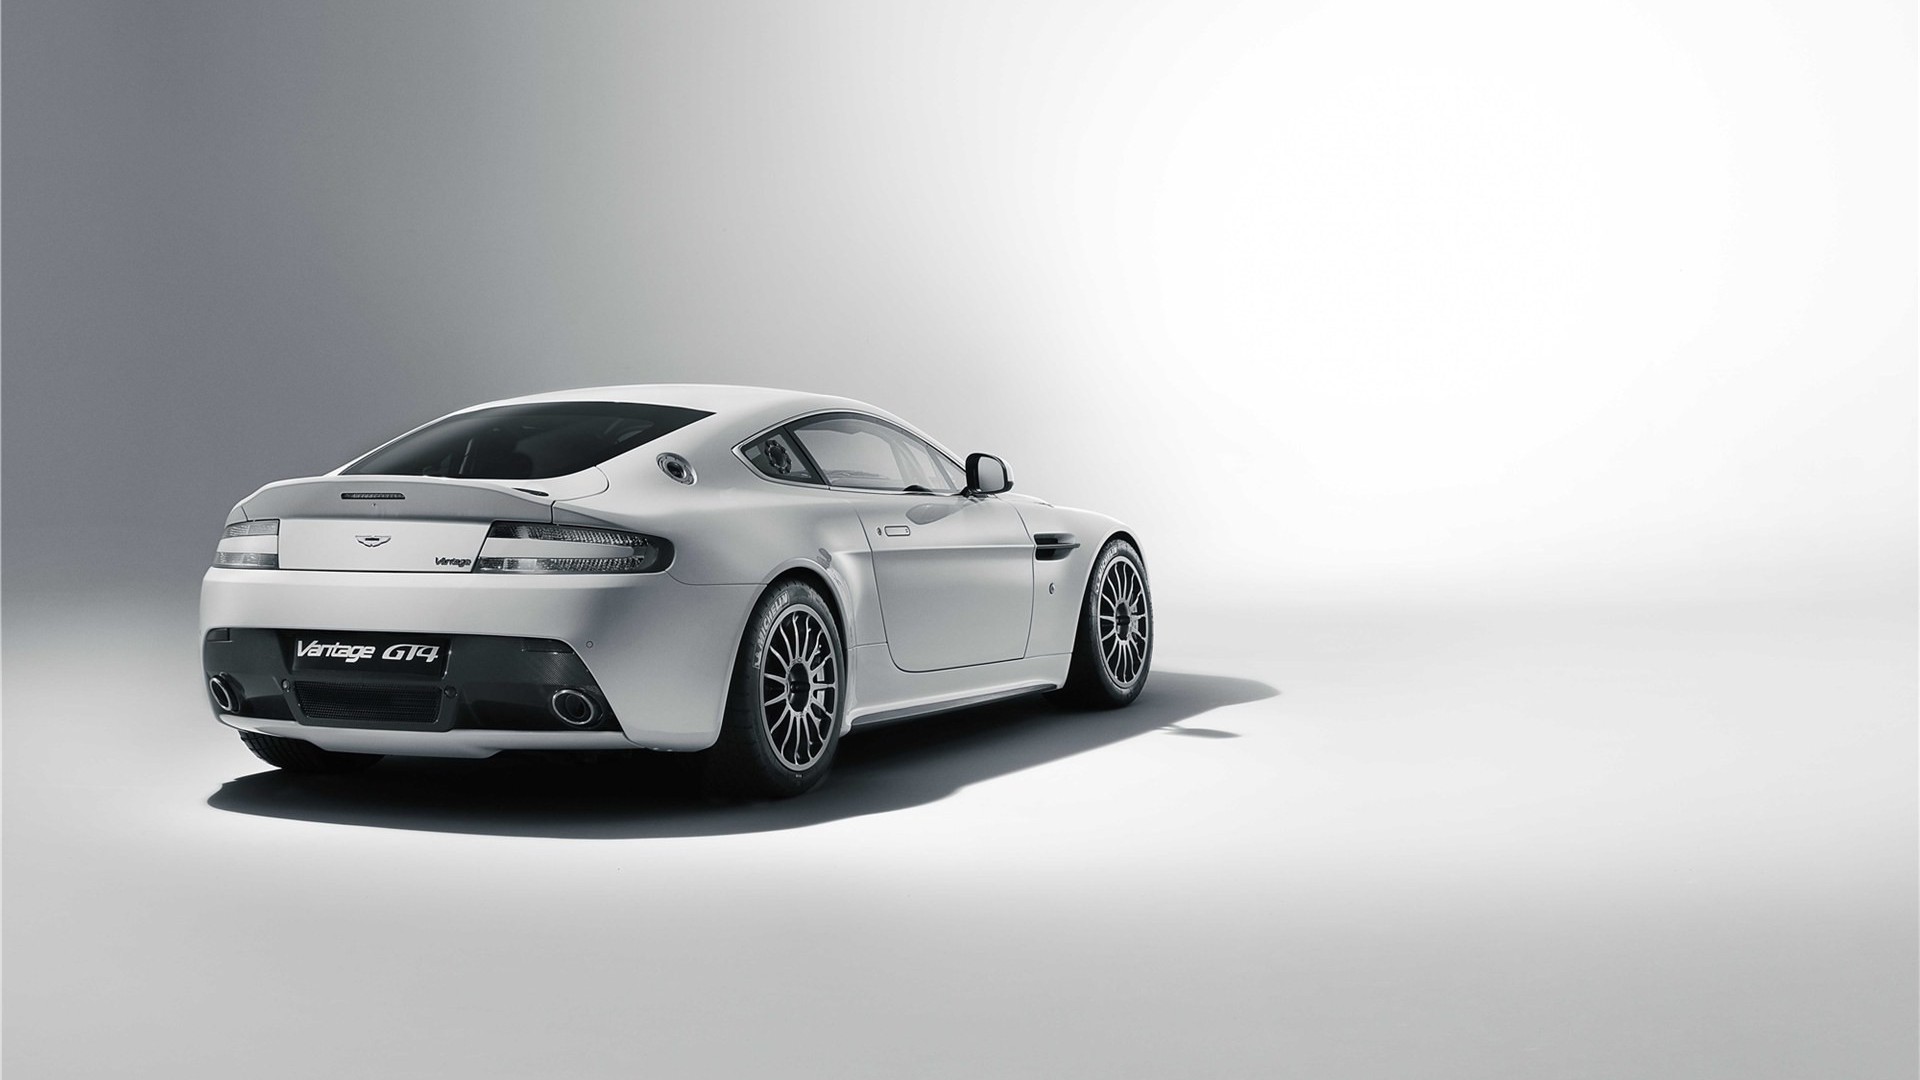 Descargar fondos de escritorio de Aston Martin Vantage Gt4 HD